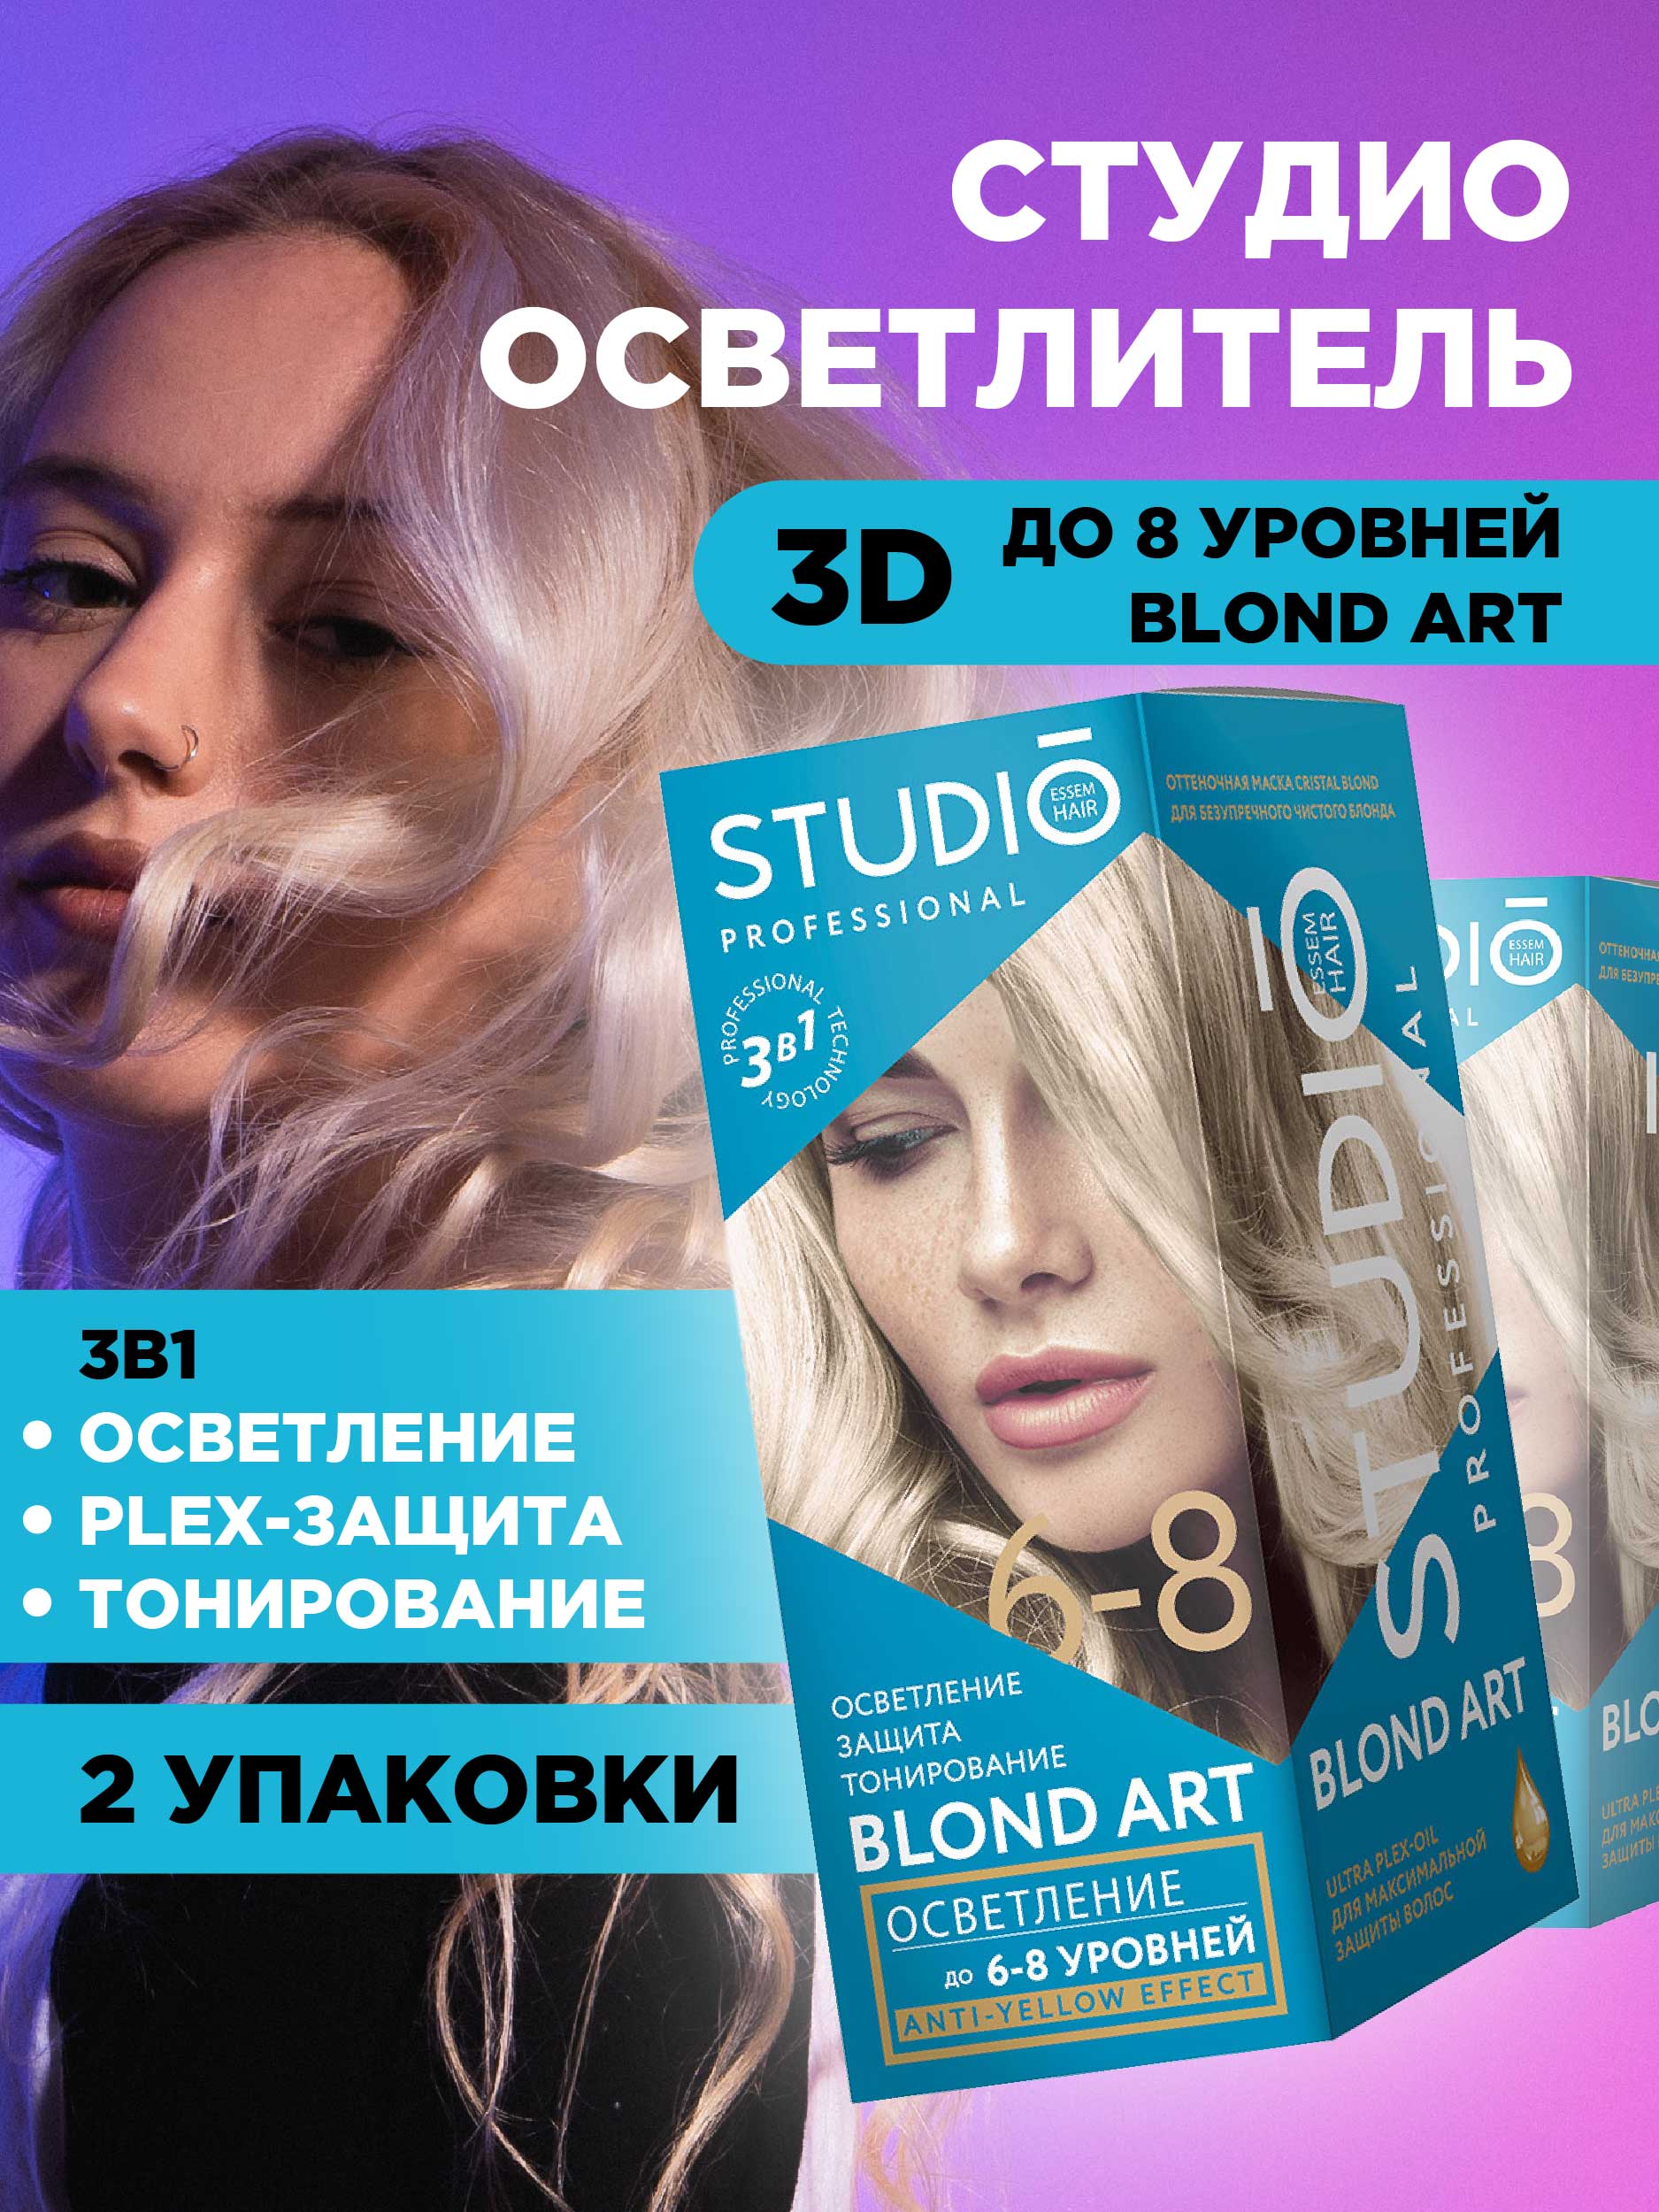 Осветлитель для волос Studio Professional 3D до 8 уровней 2*25гр 2шт учебно грамматическая таблица глаголы движения